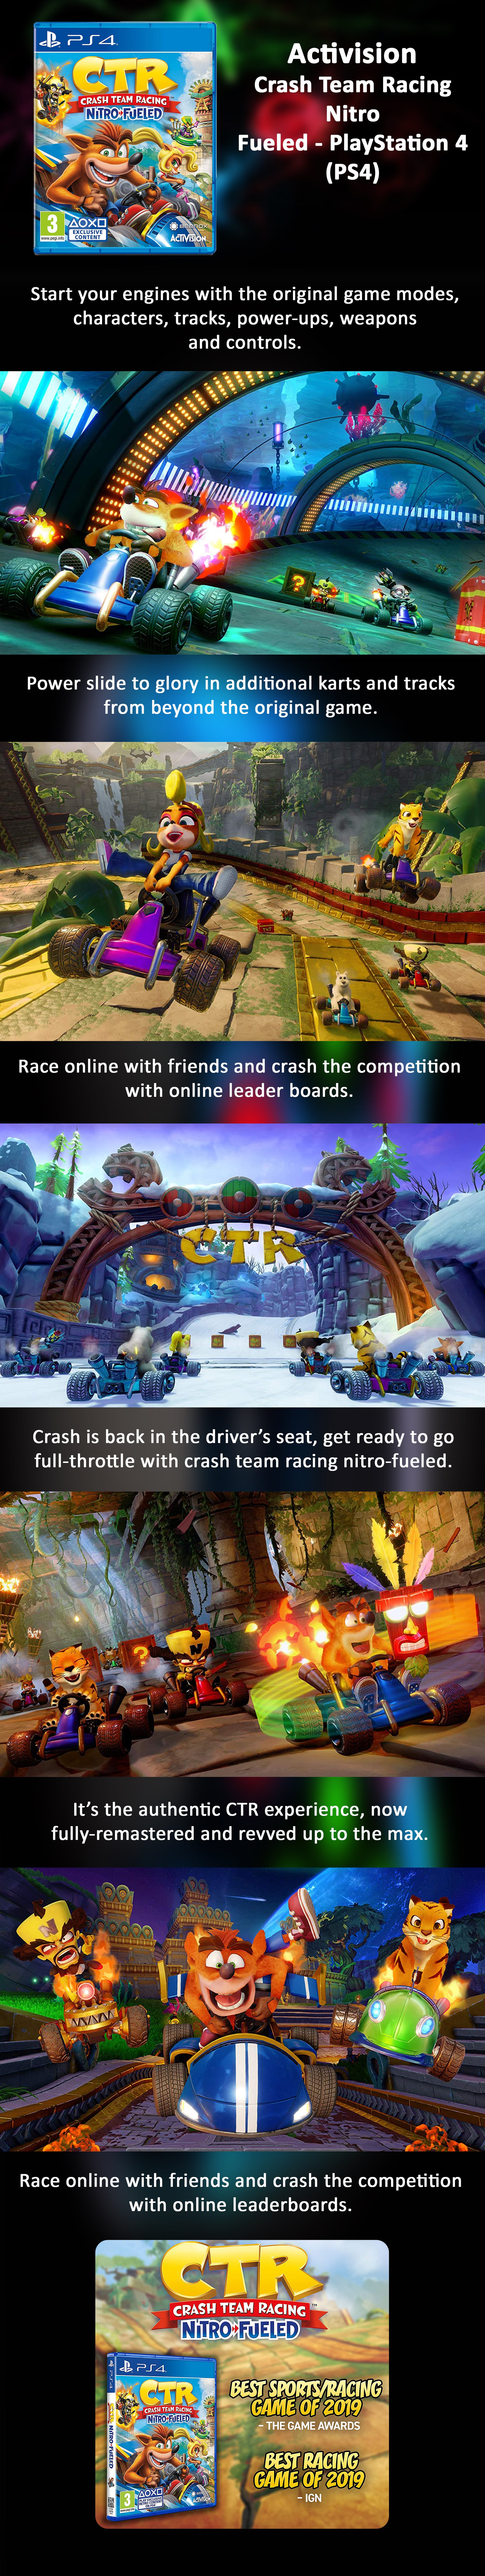 Crash Team Racing Nitro Fueled Eng/Arabic (KSA Version) - Racing - PlayStation 4 (PS4)